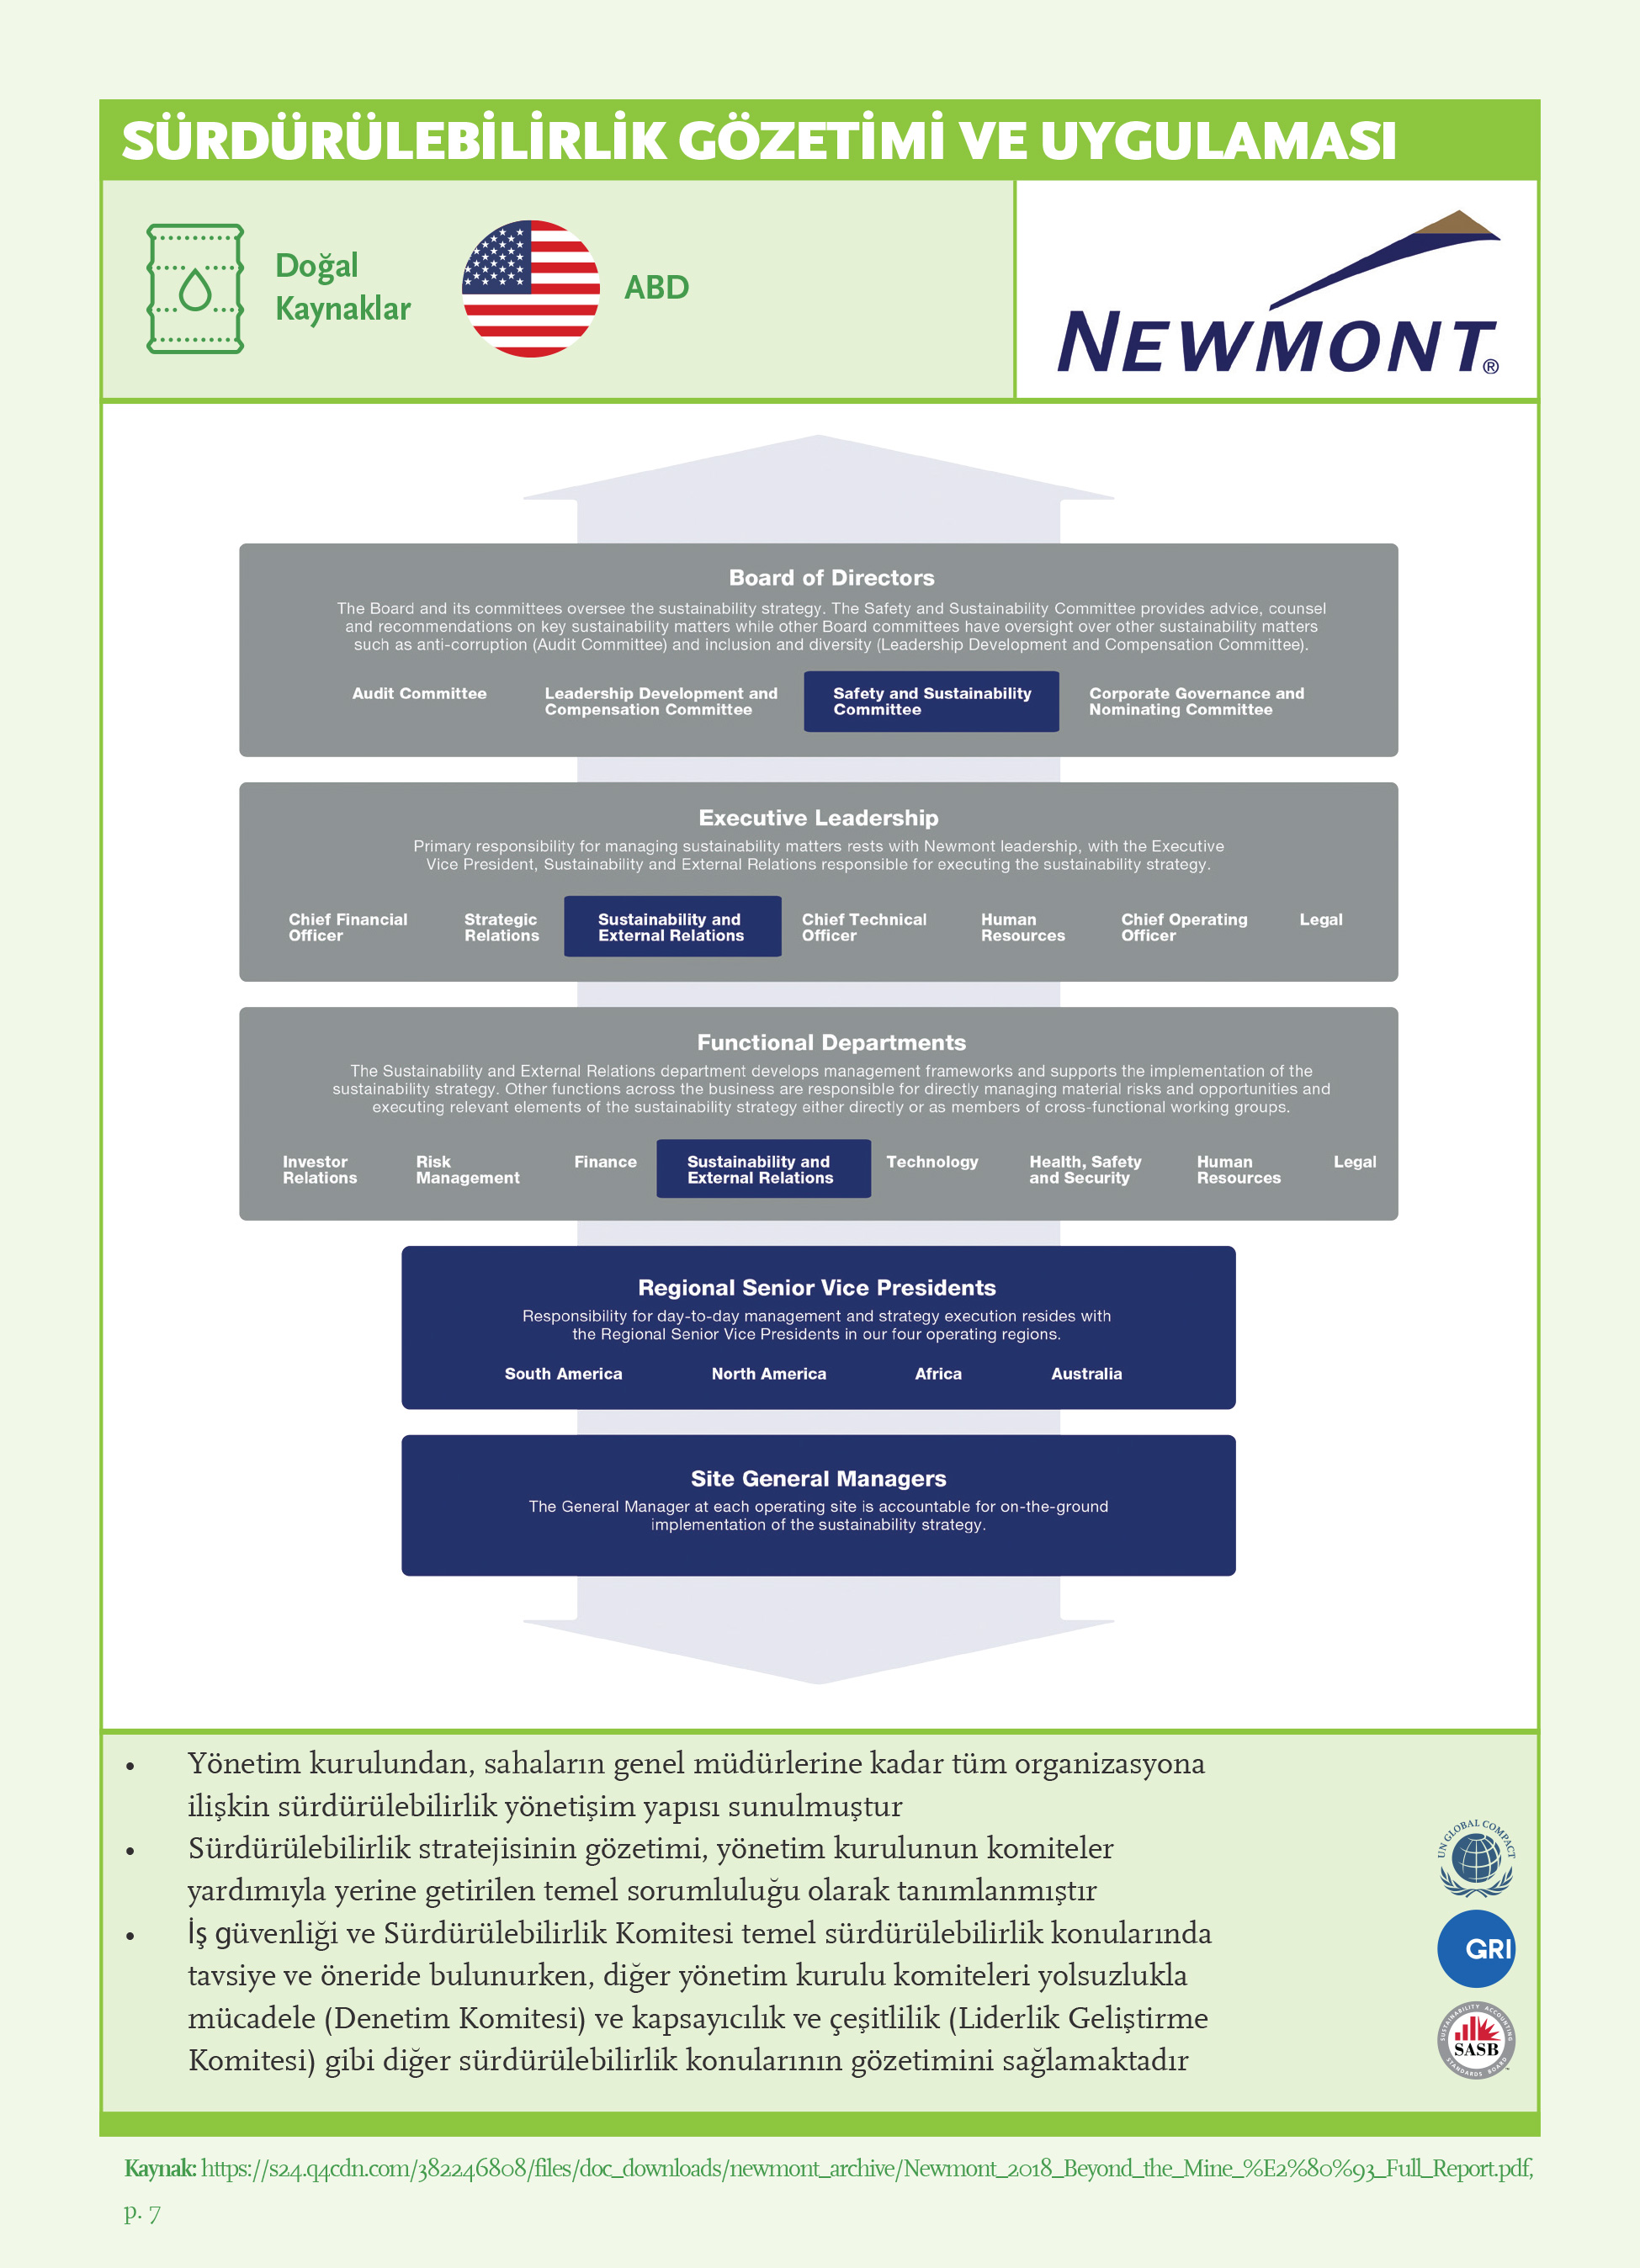 Sürdürülebilirlik Gözetimi ve Uygulaması: Newmont